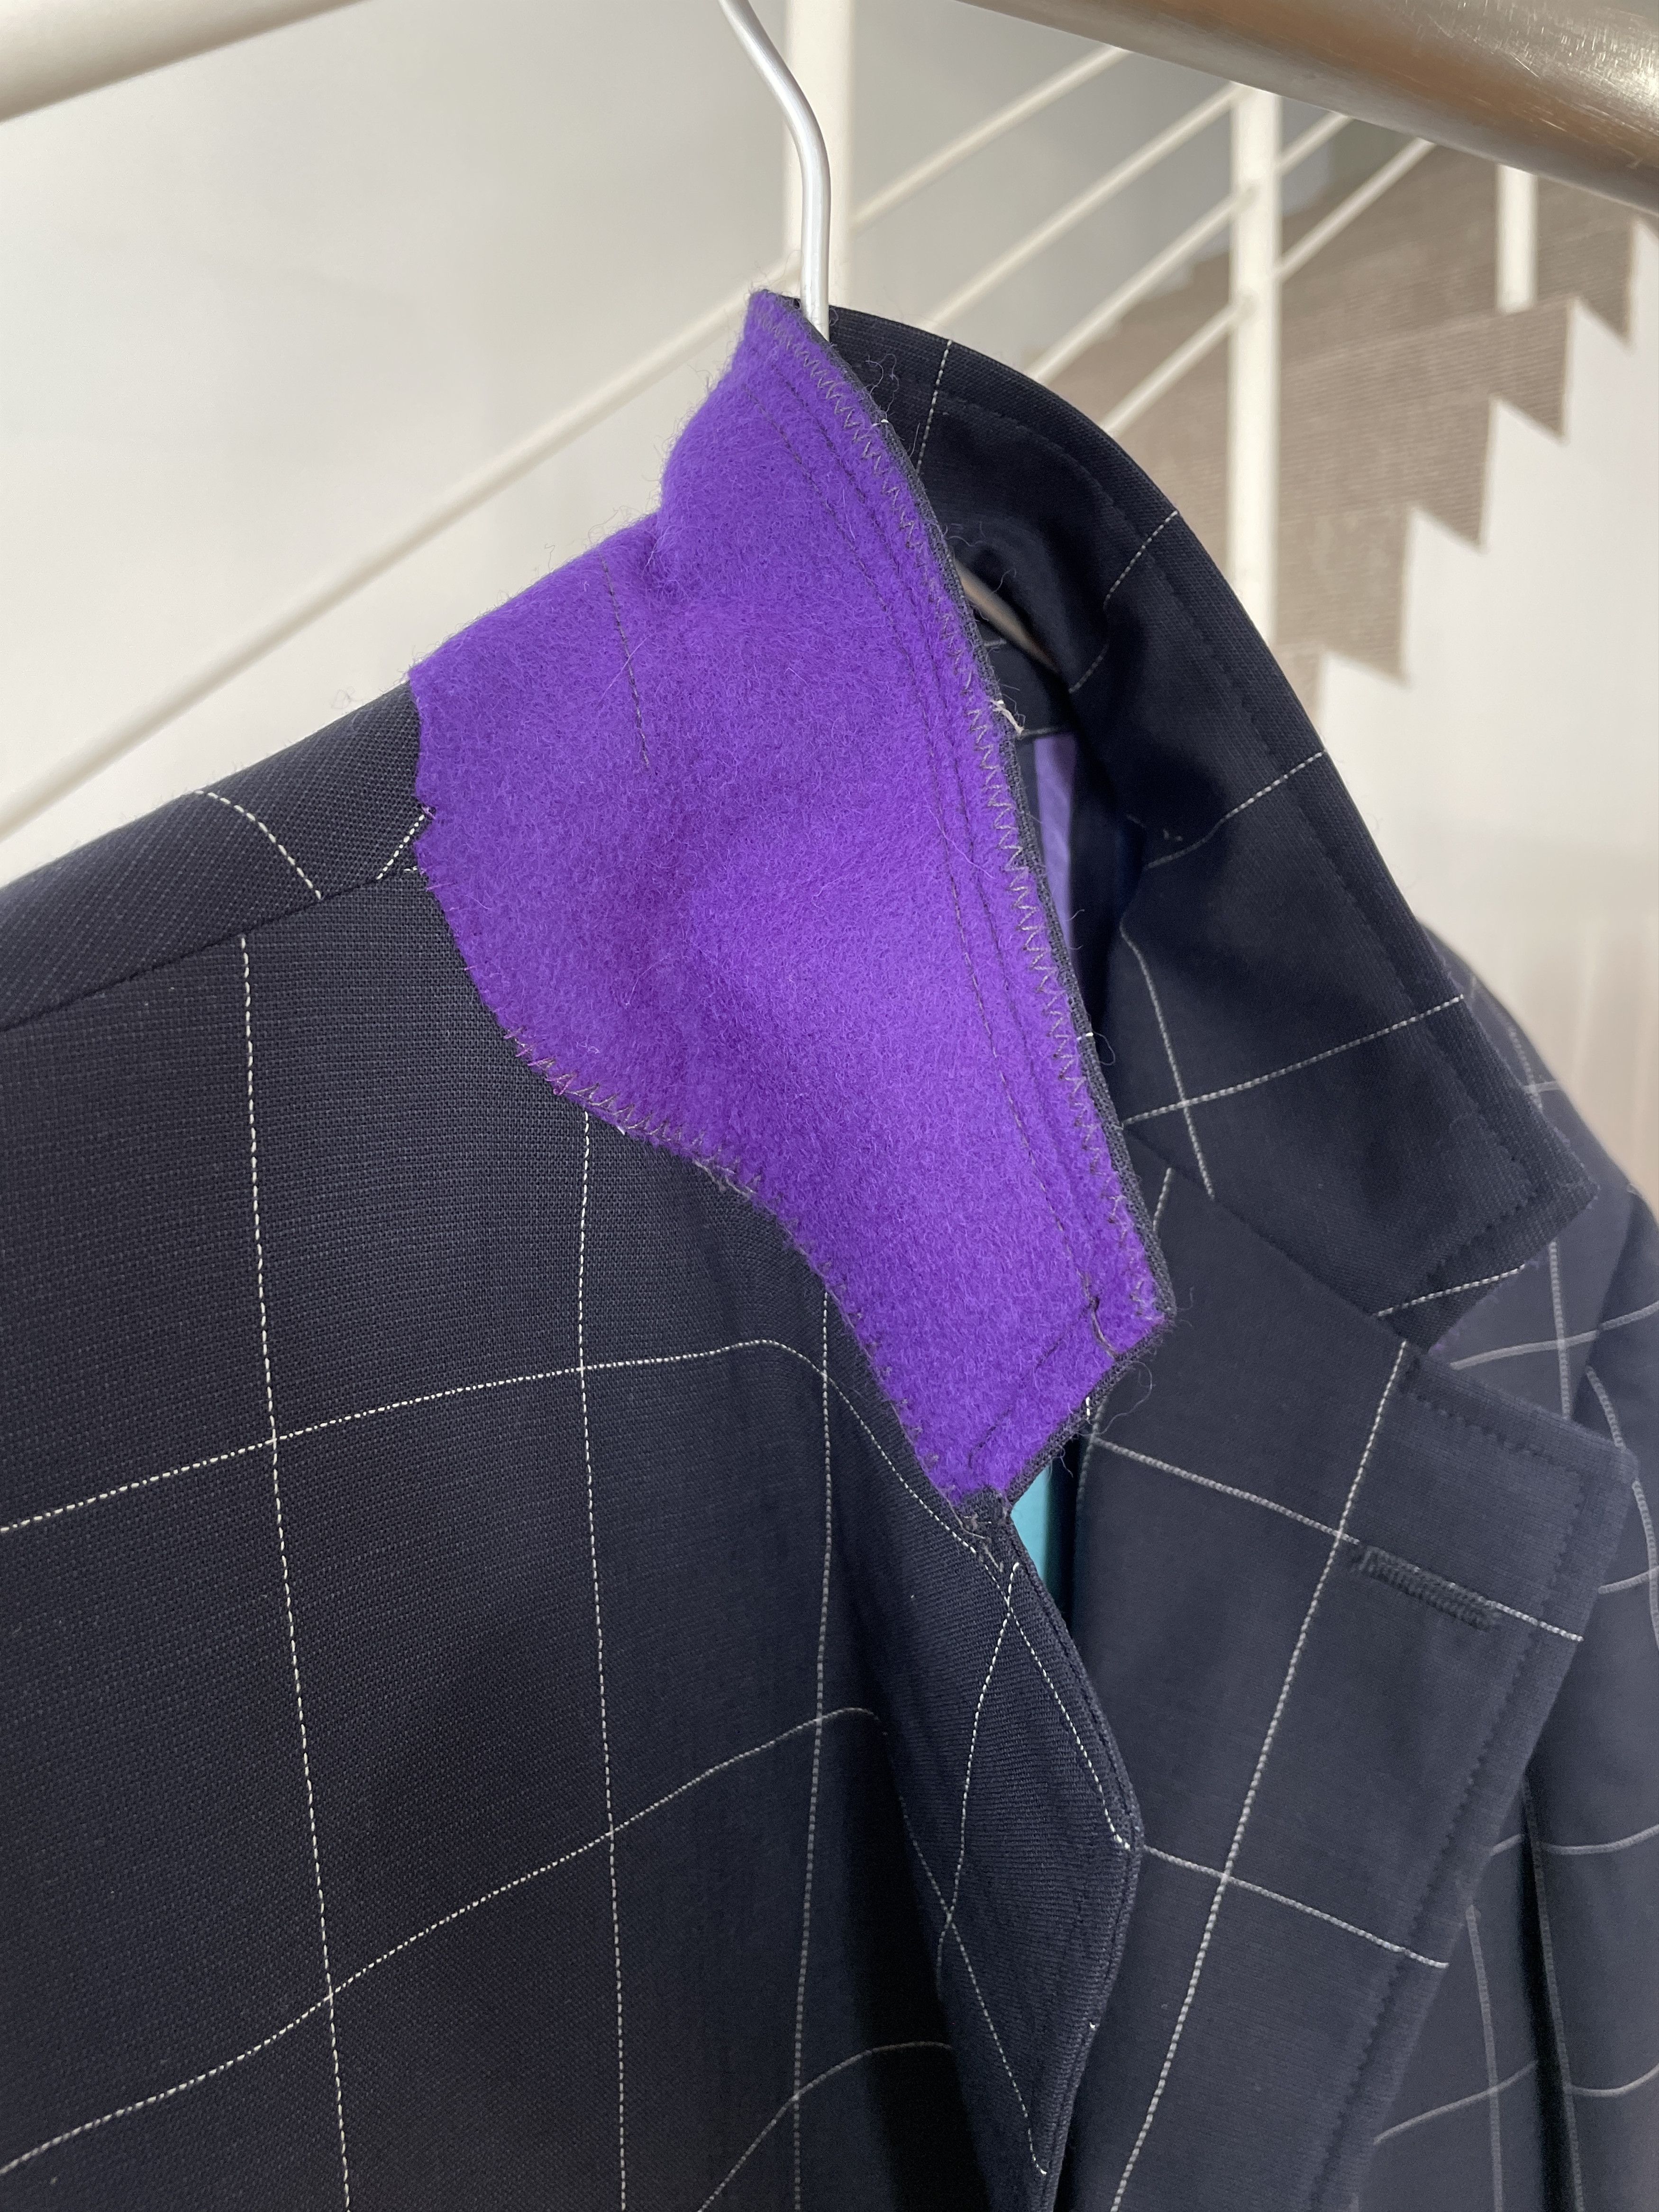 Etro ETRO Jacket Coat Blazer Trousers Suit Plaid Wool A7923 Size 40R - 6 Thumbnail